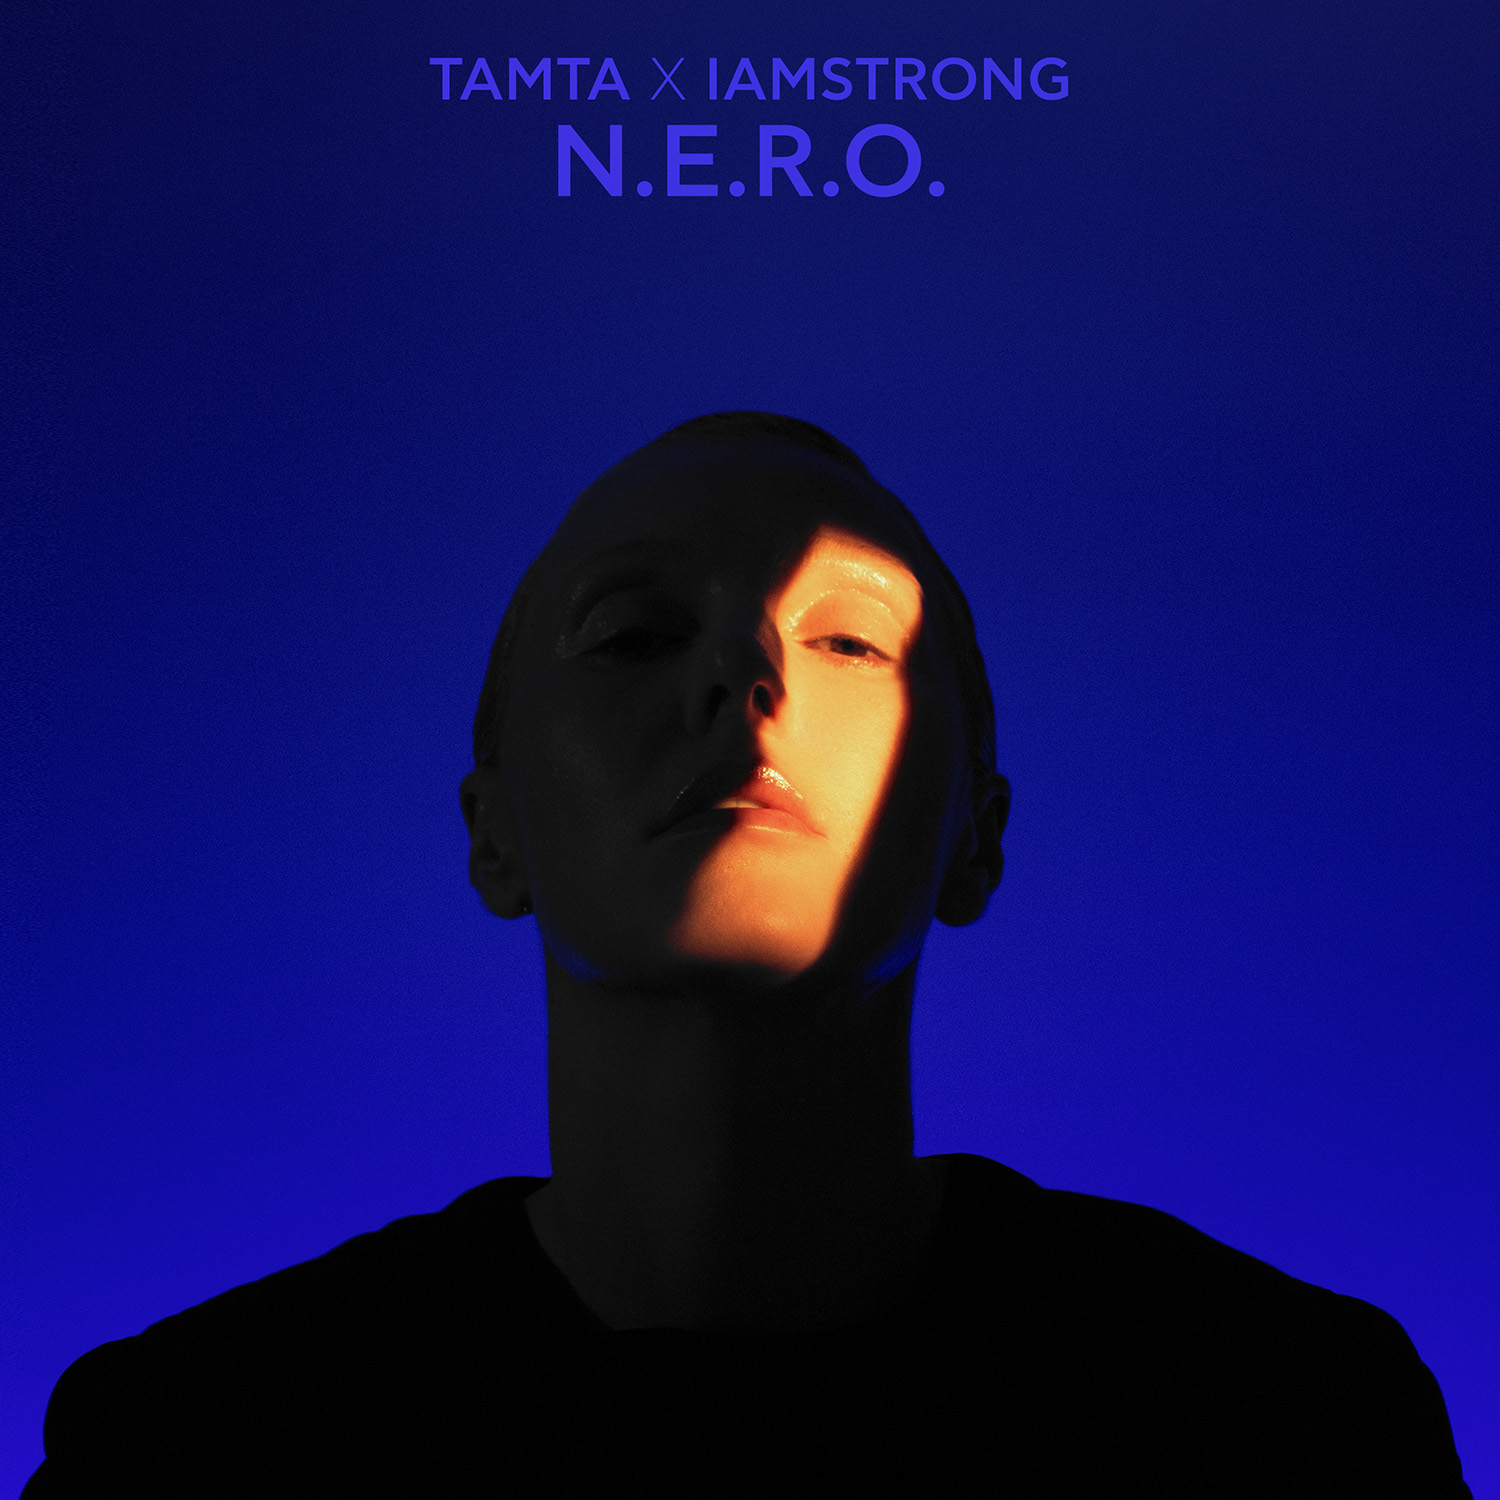 ΤΑΜΤΑ x IAMSTRONG – “N.E.R.O.” | Νέο Ραδιοφωνικό Single